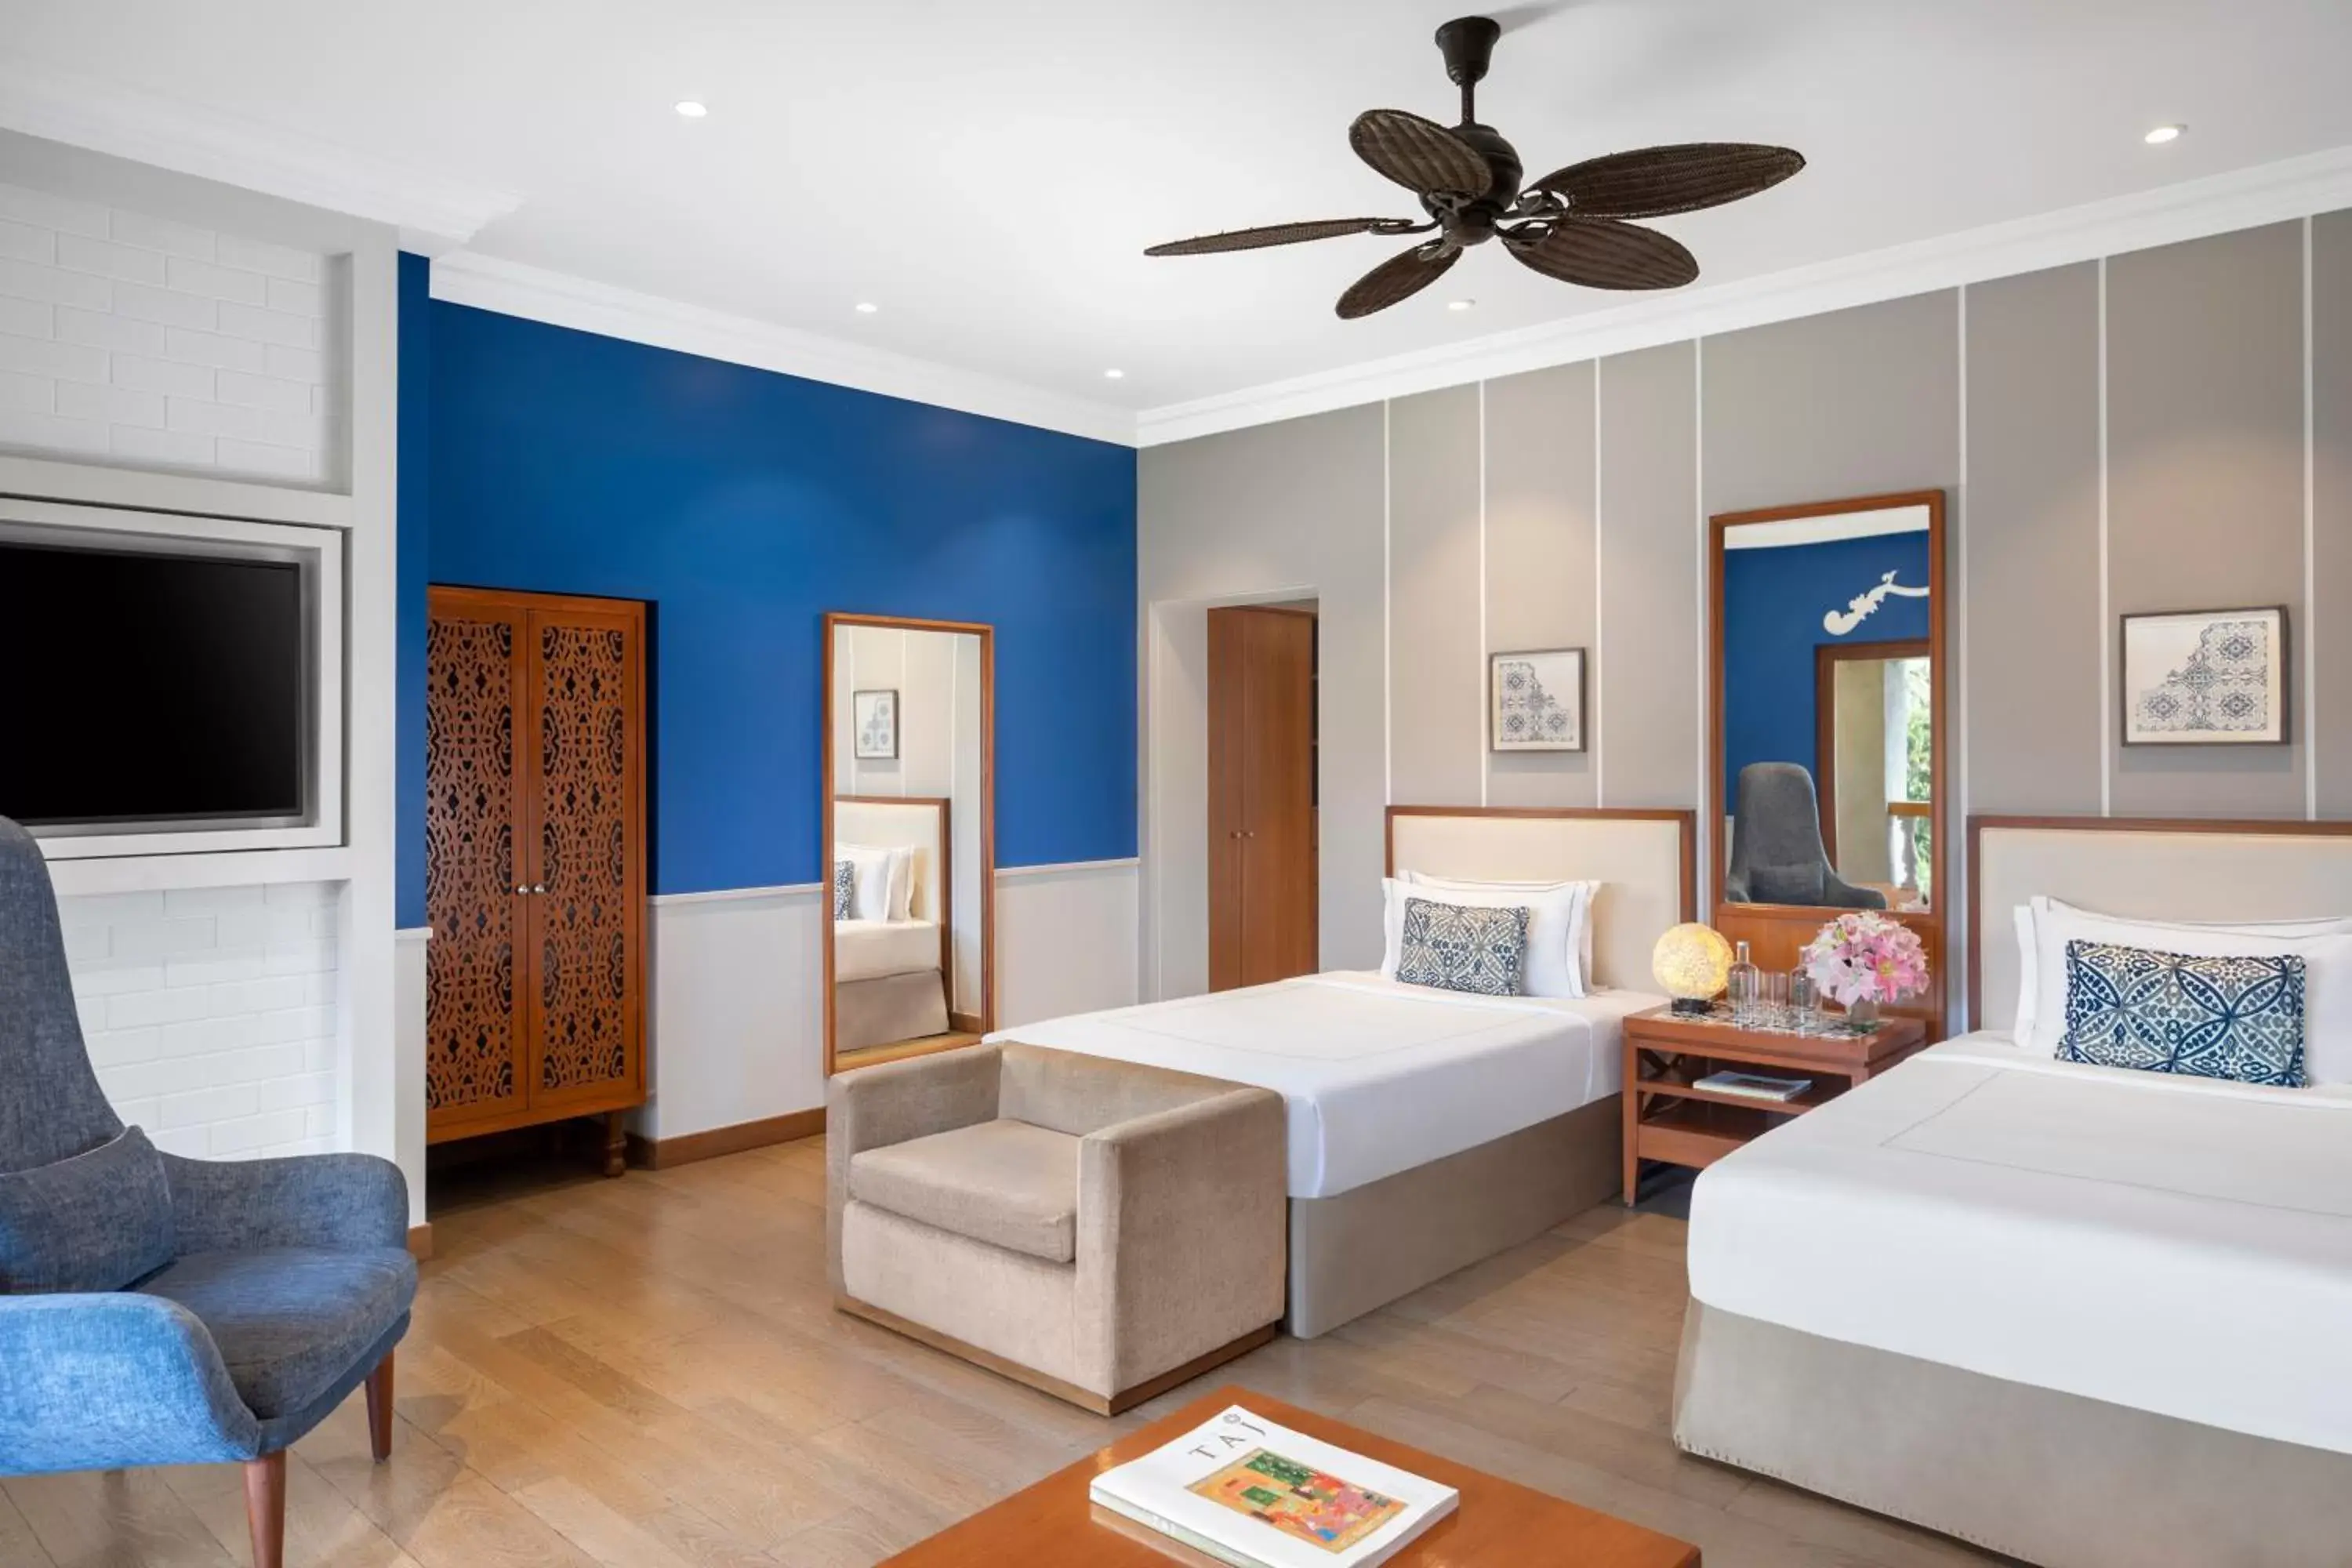 Bedroom in Taj Exotica Resort & Spa, Goa